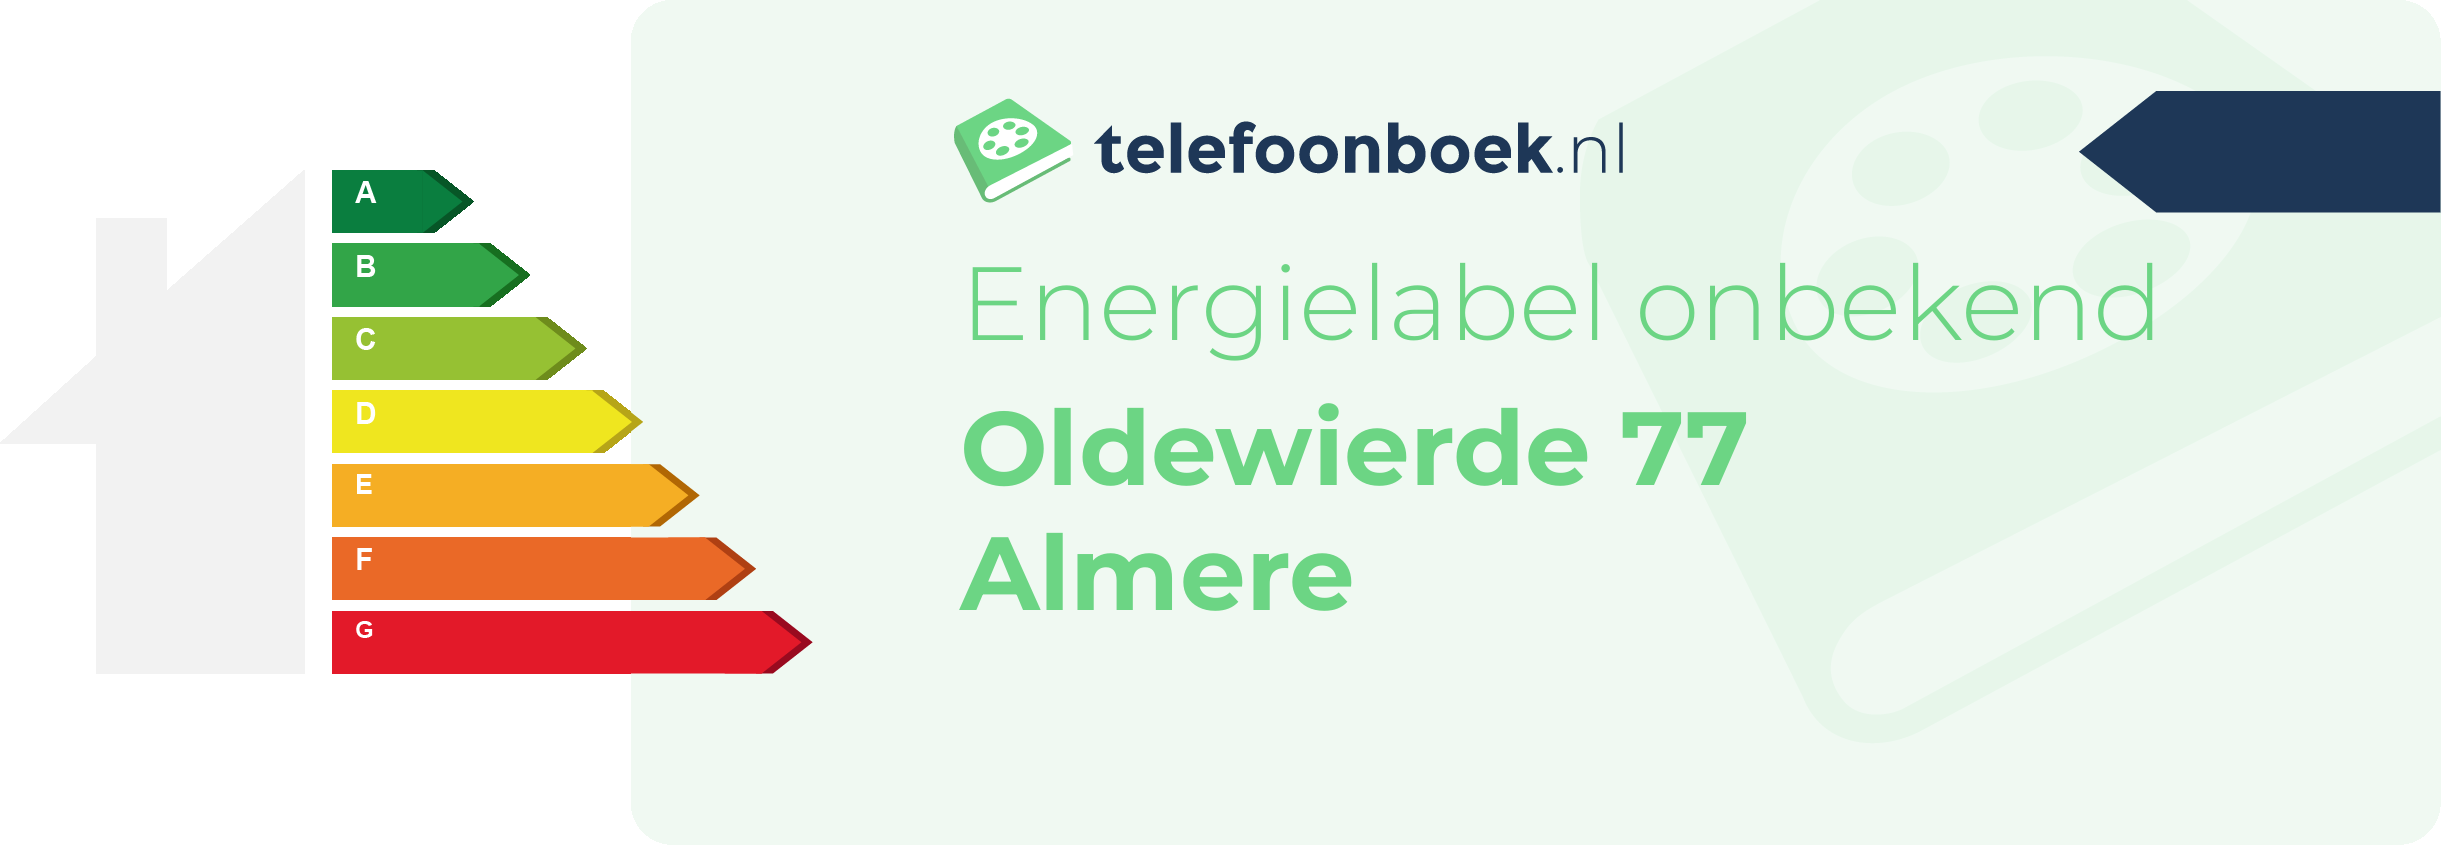 Energielabel Oldewierde 77 Almere